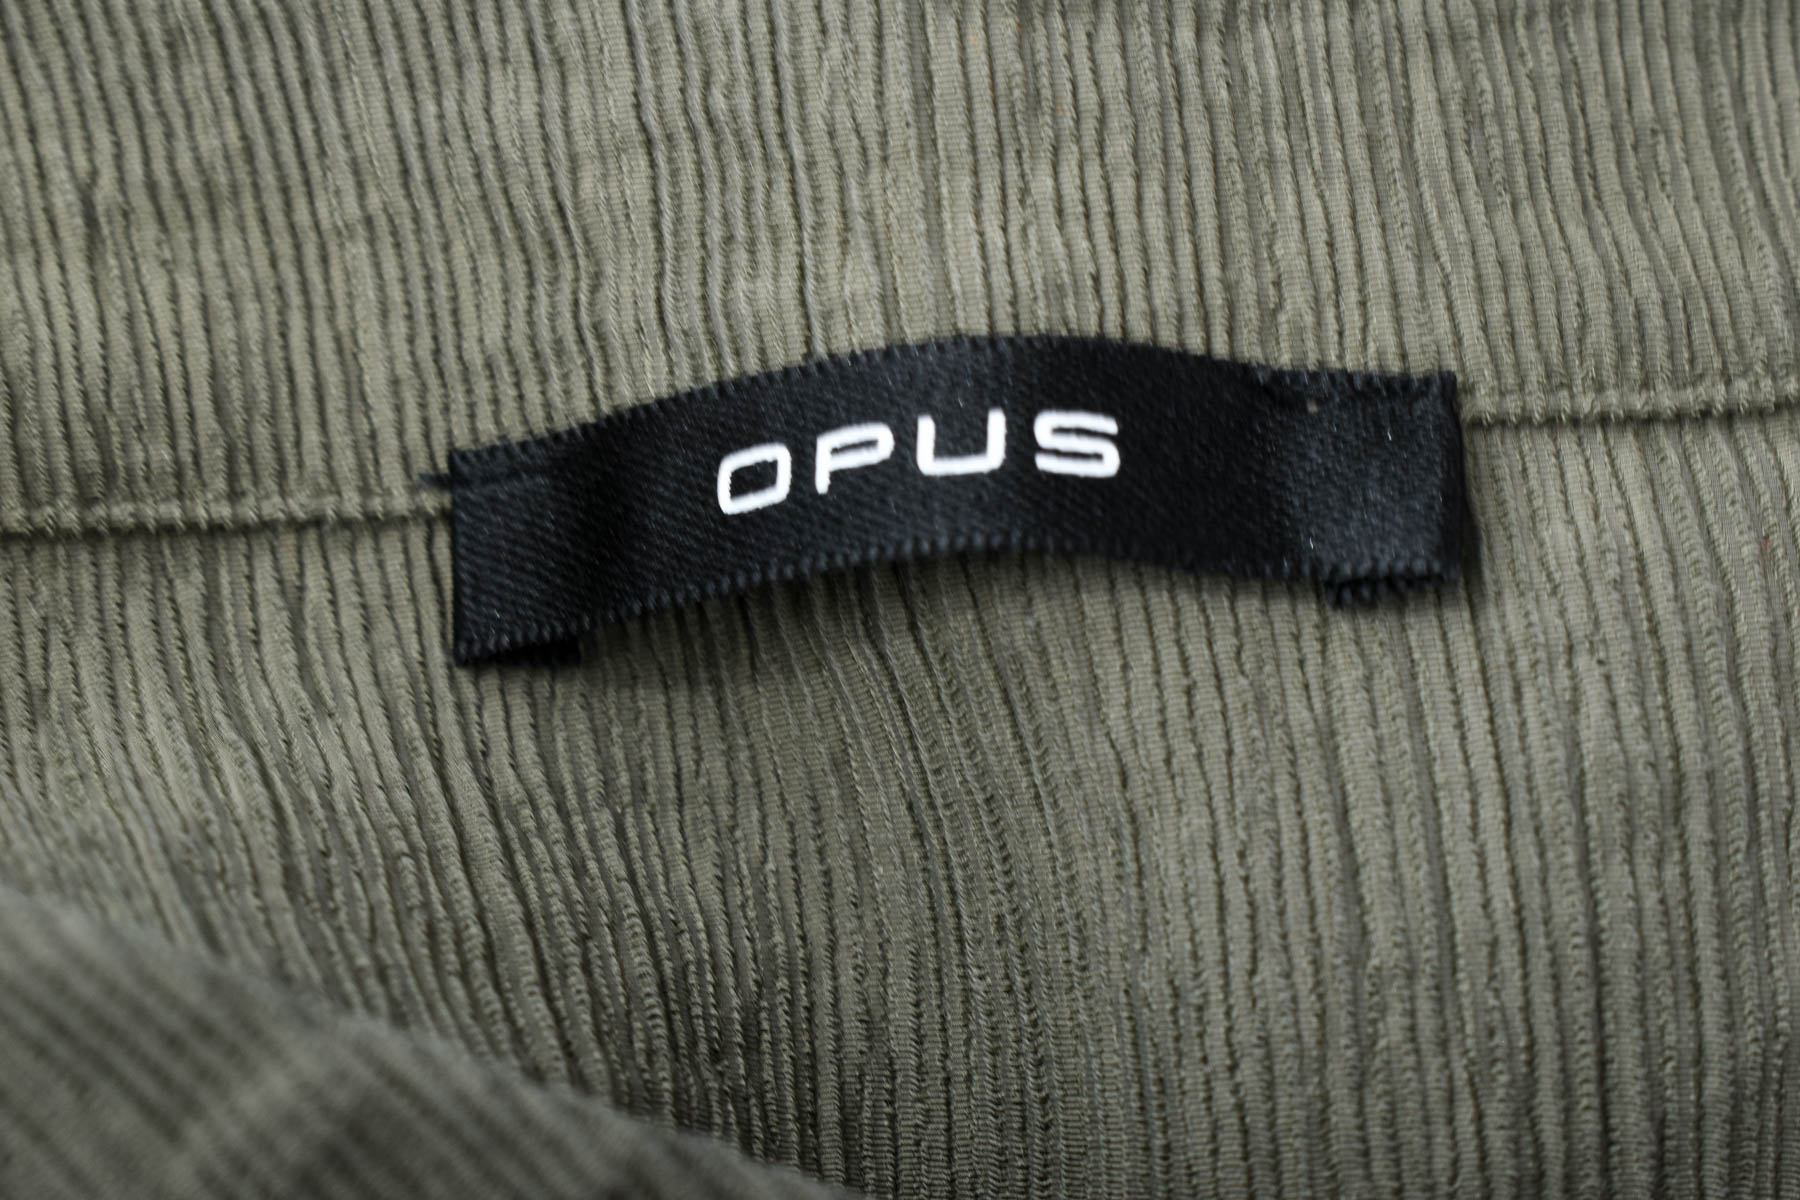 Women's shirt - OPUS - 2